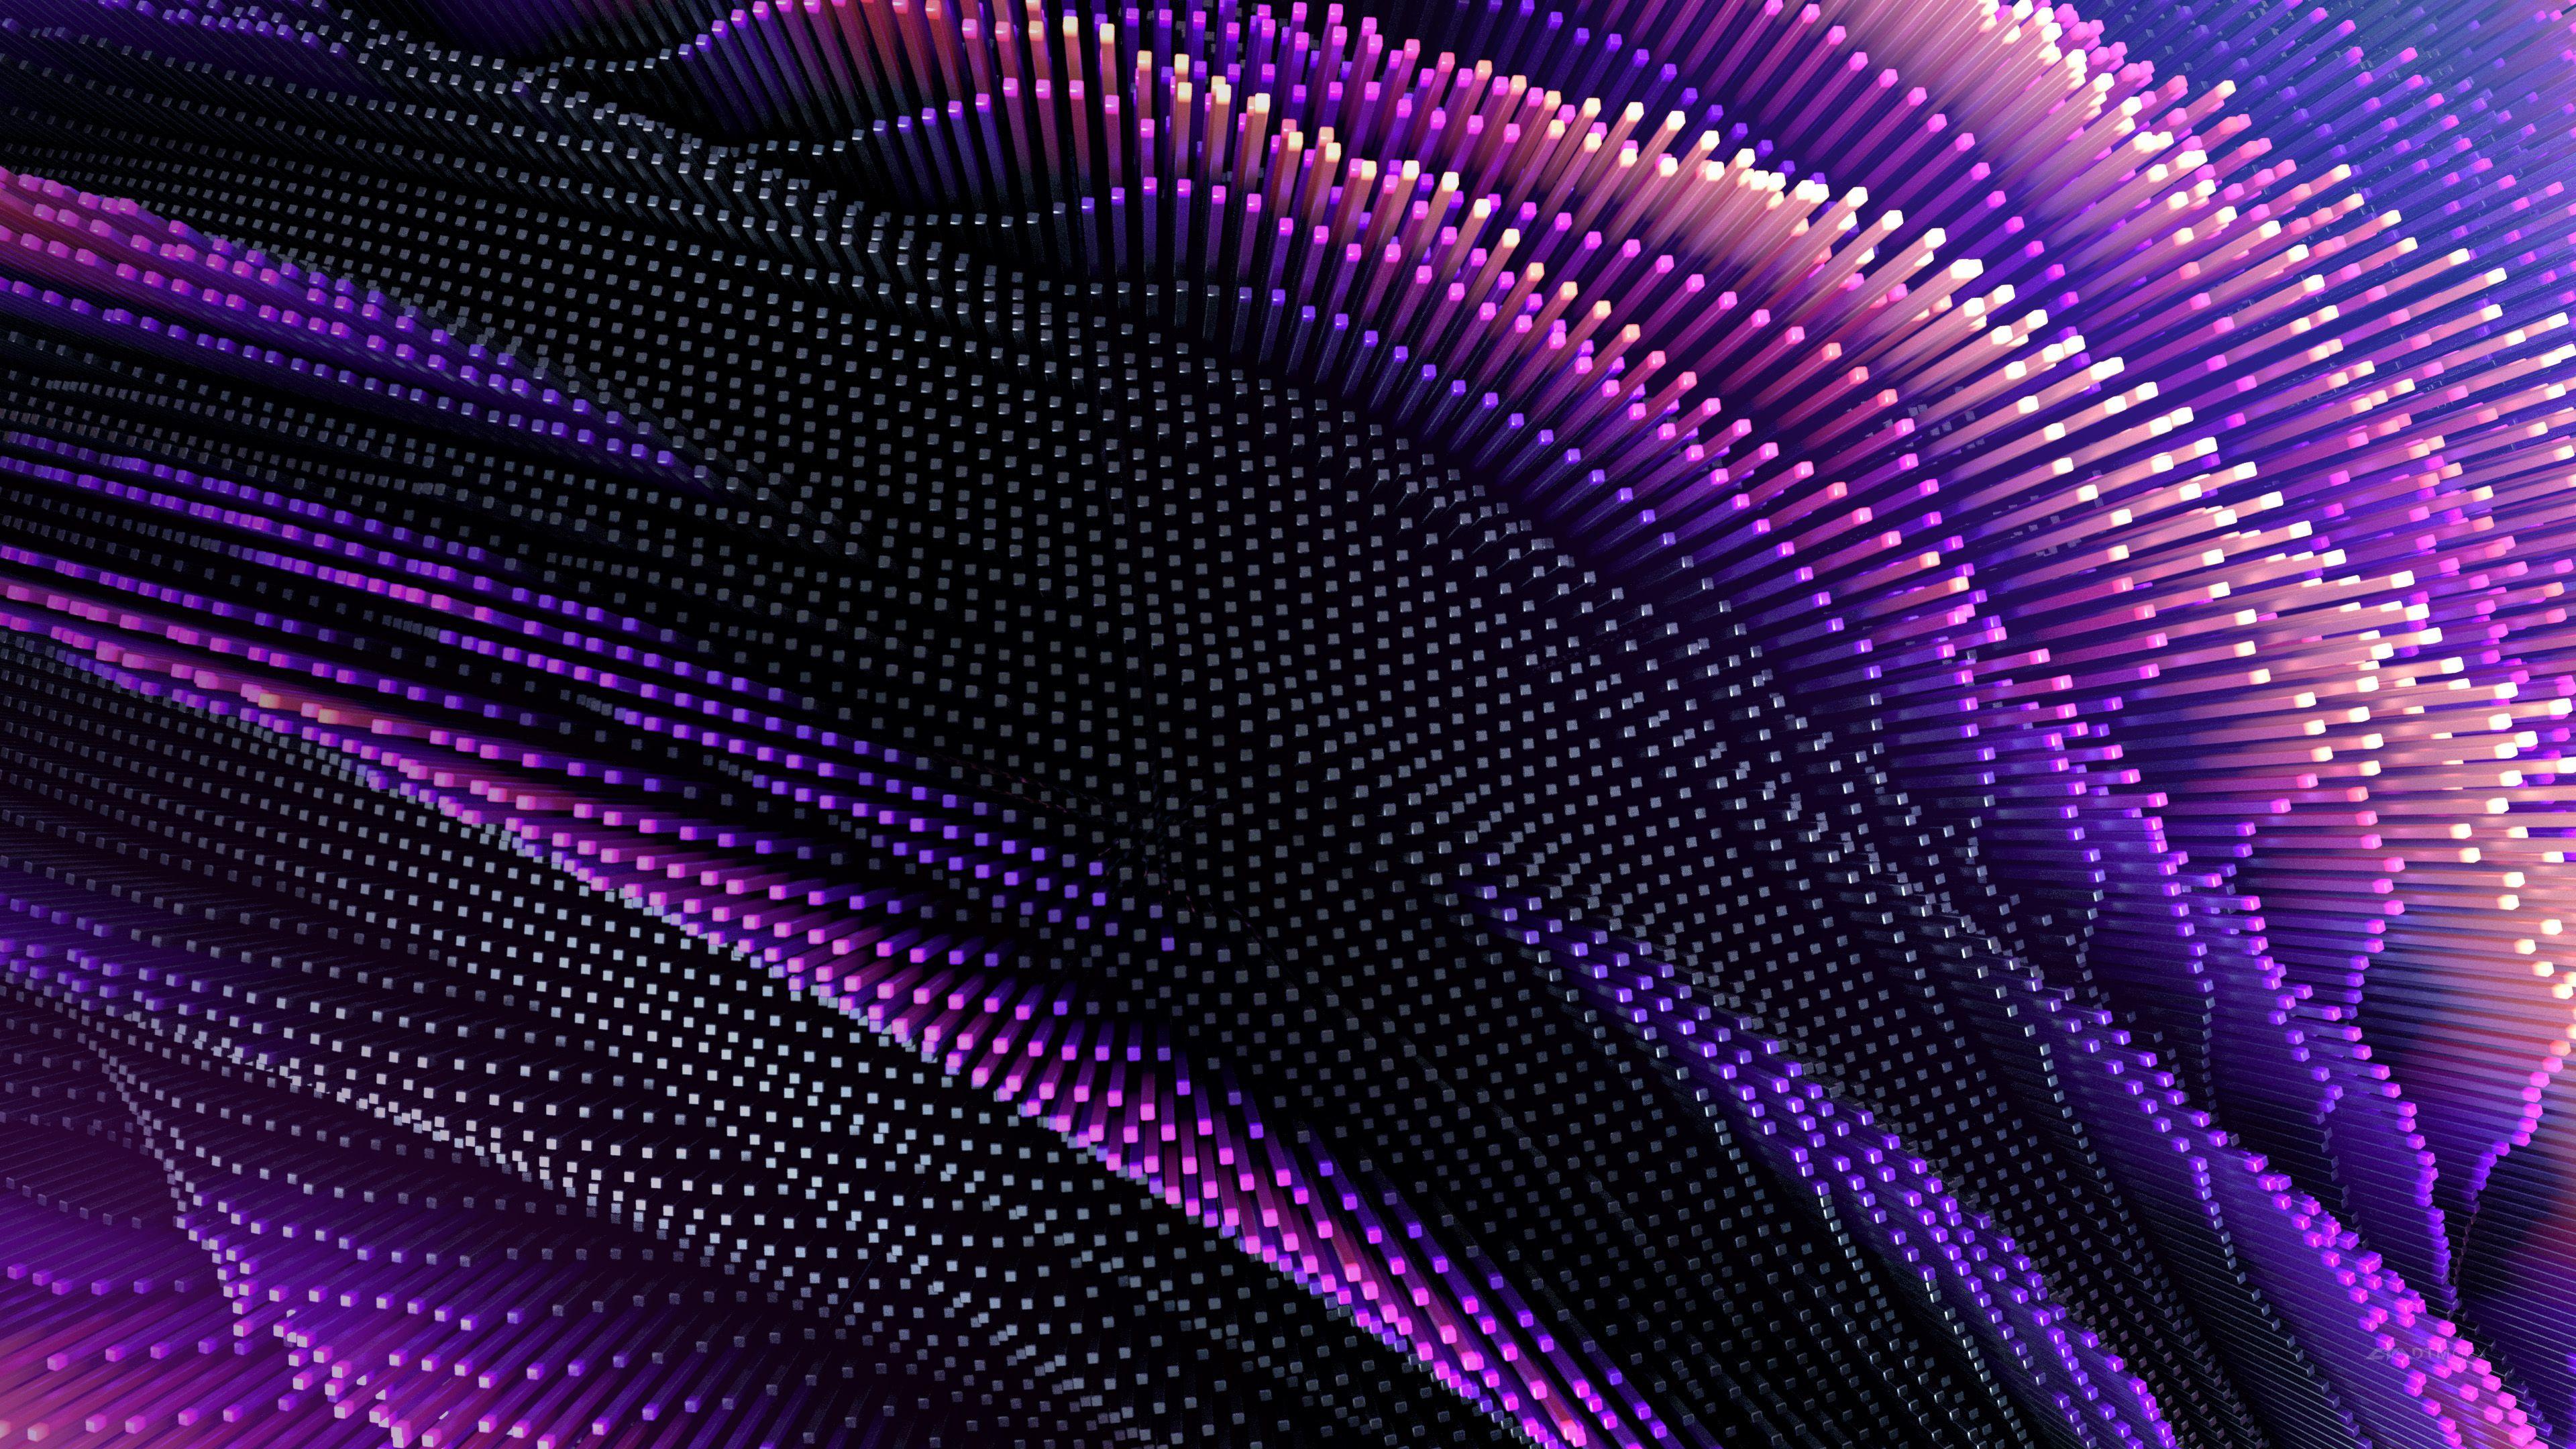 Neon Purple Wallpapers - Top Hình Ảnh Đẹp